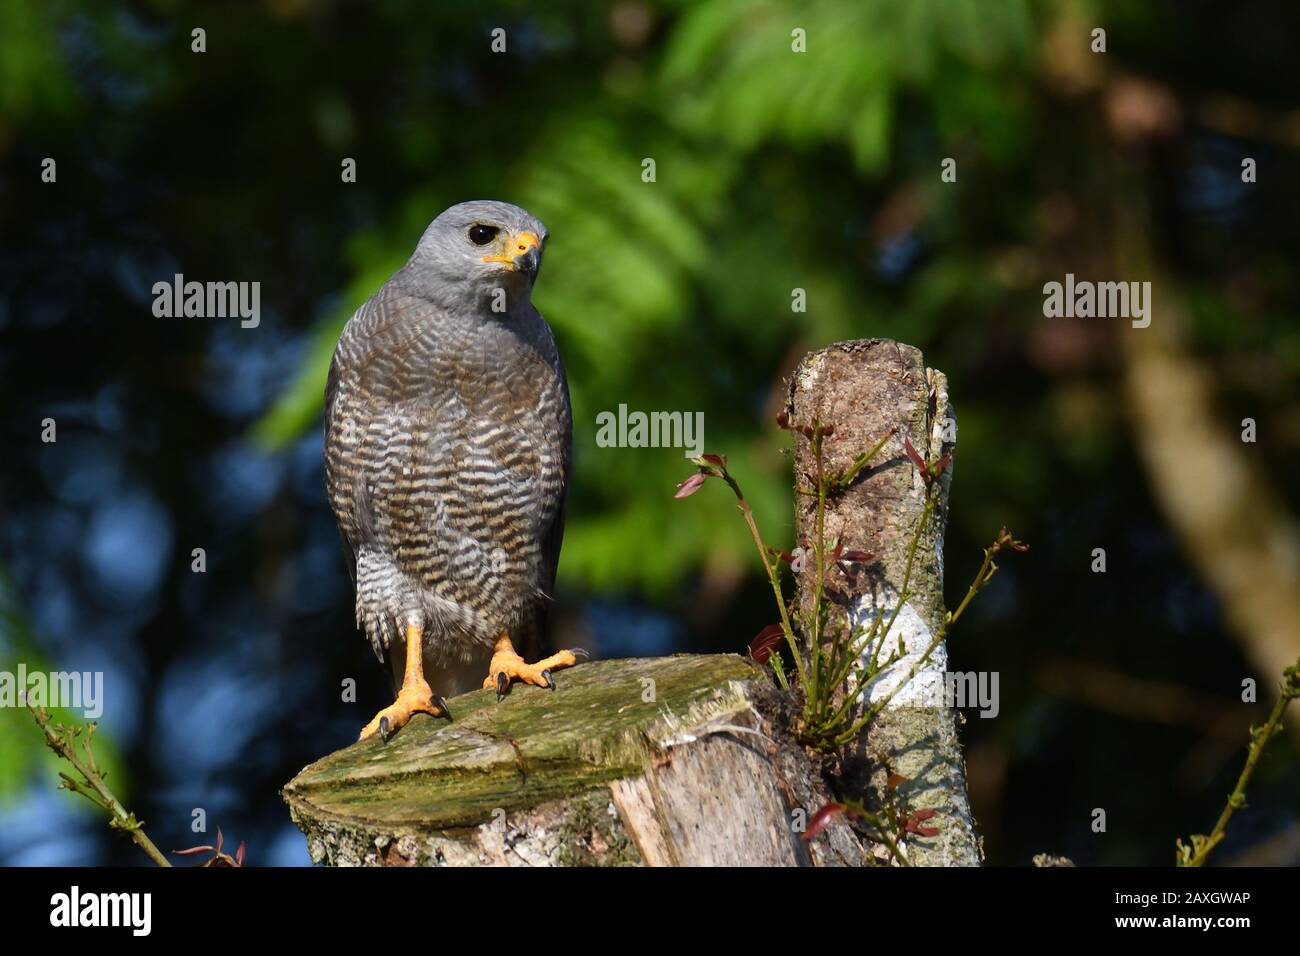 A Gray Hawk in Costa Rica rainforest Stock Photo